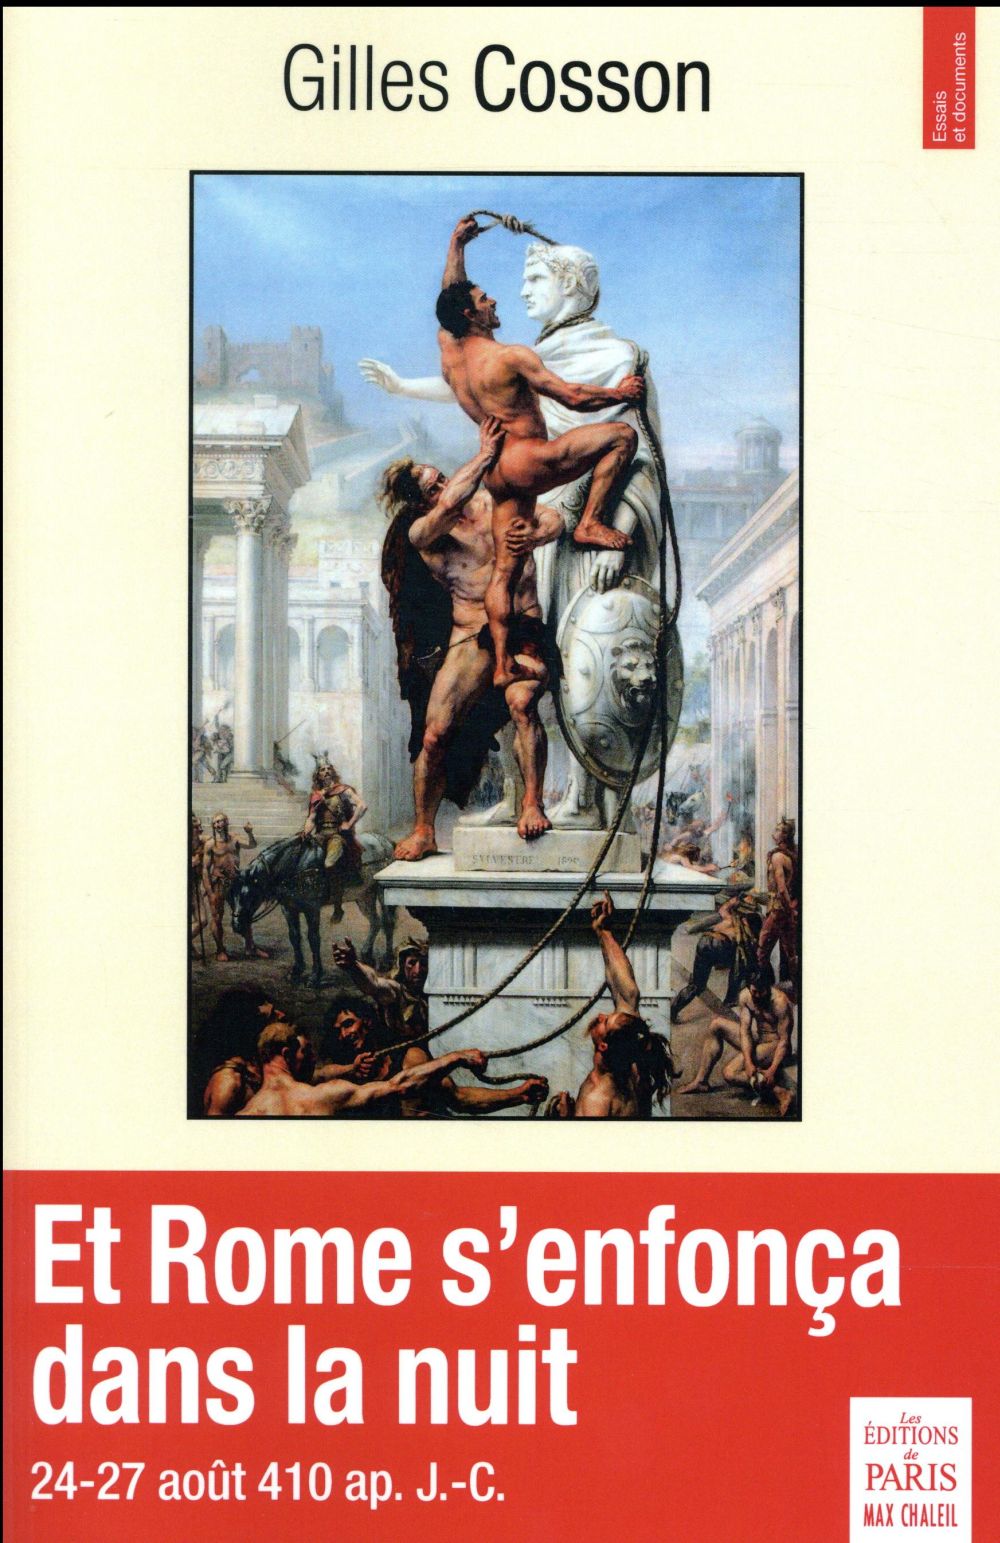 ET ROME S'ENFONCA DANS LA NUIT - 24-27 AOUT AP. J.-C.